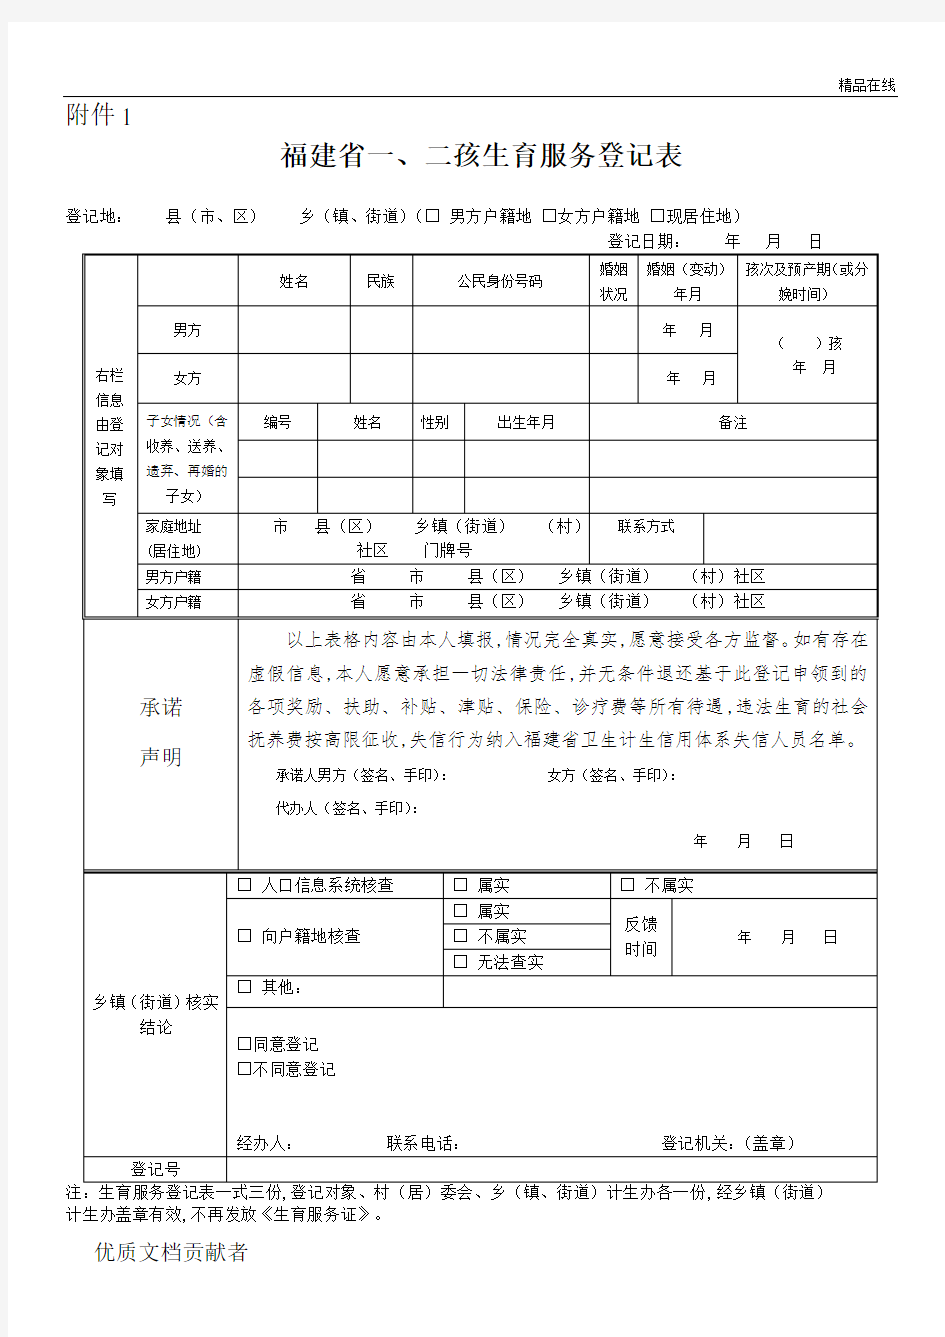 (新)福建省一、二孩生育服务登记表、再生育申请及说明[2]